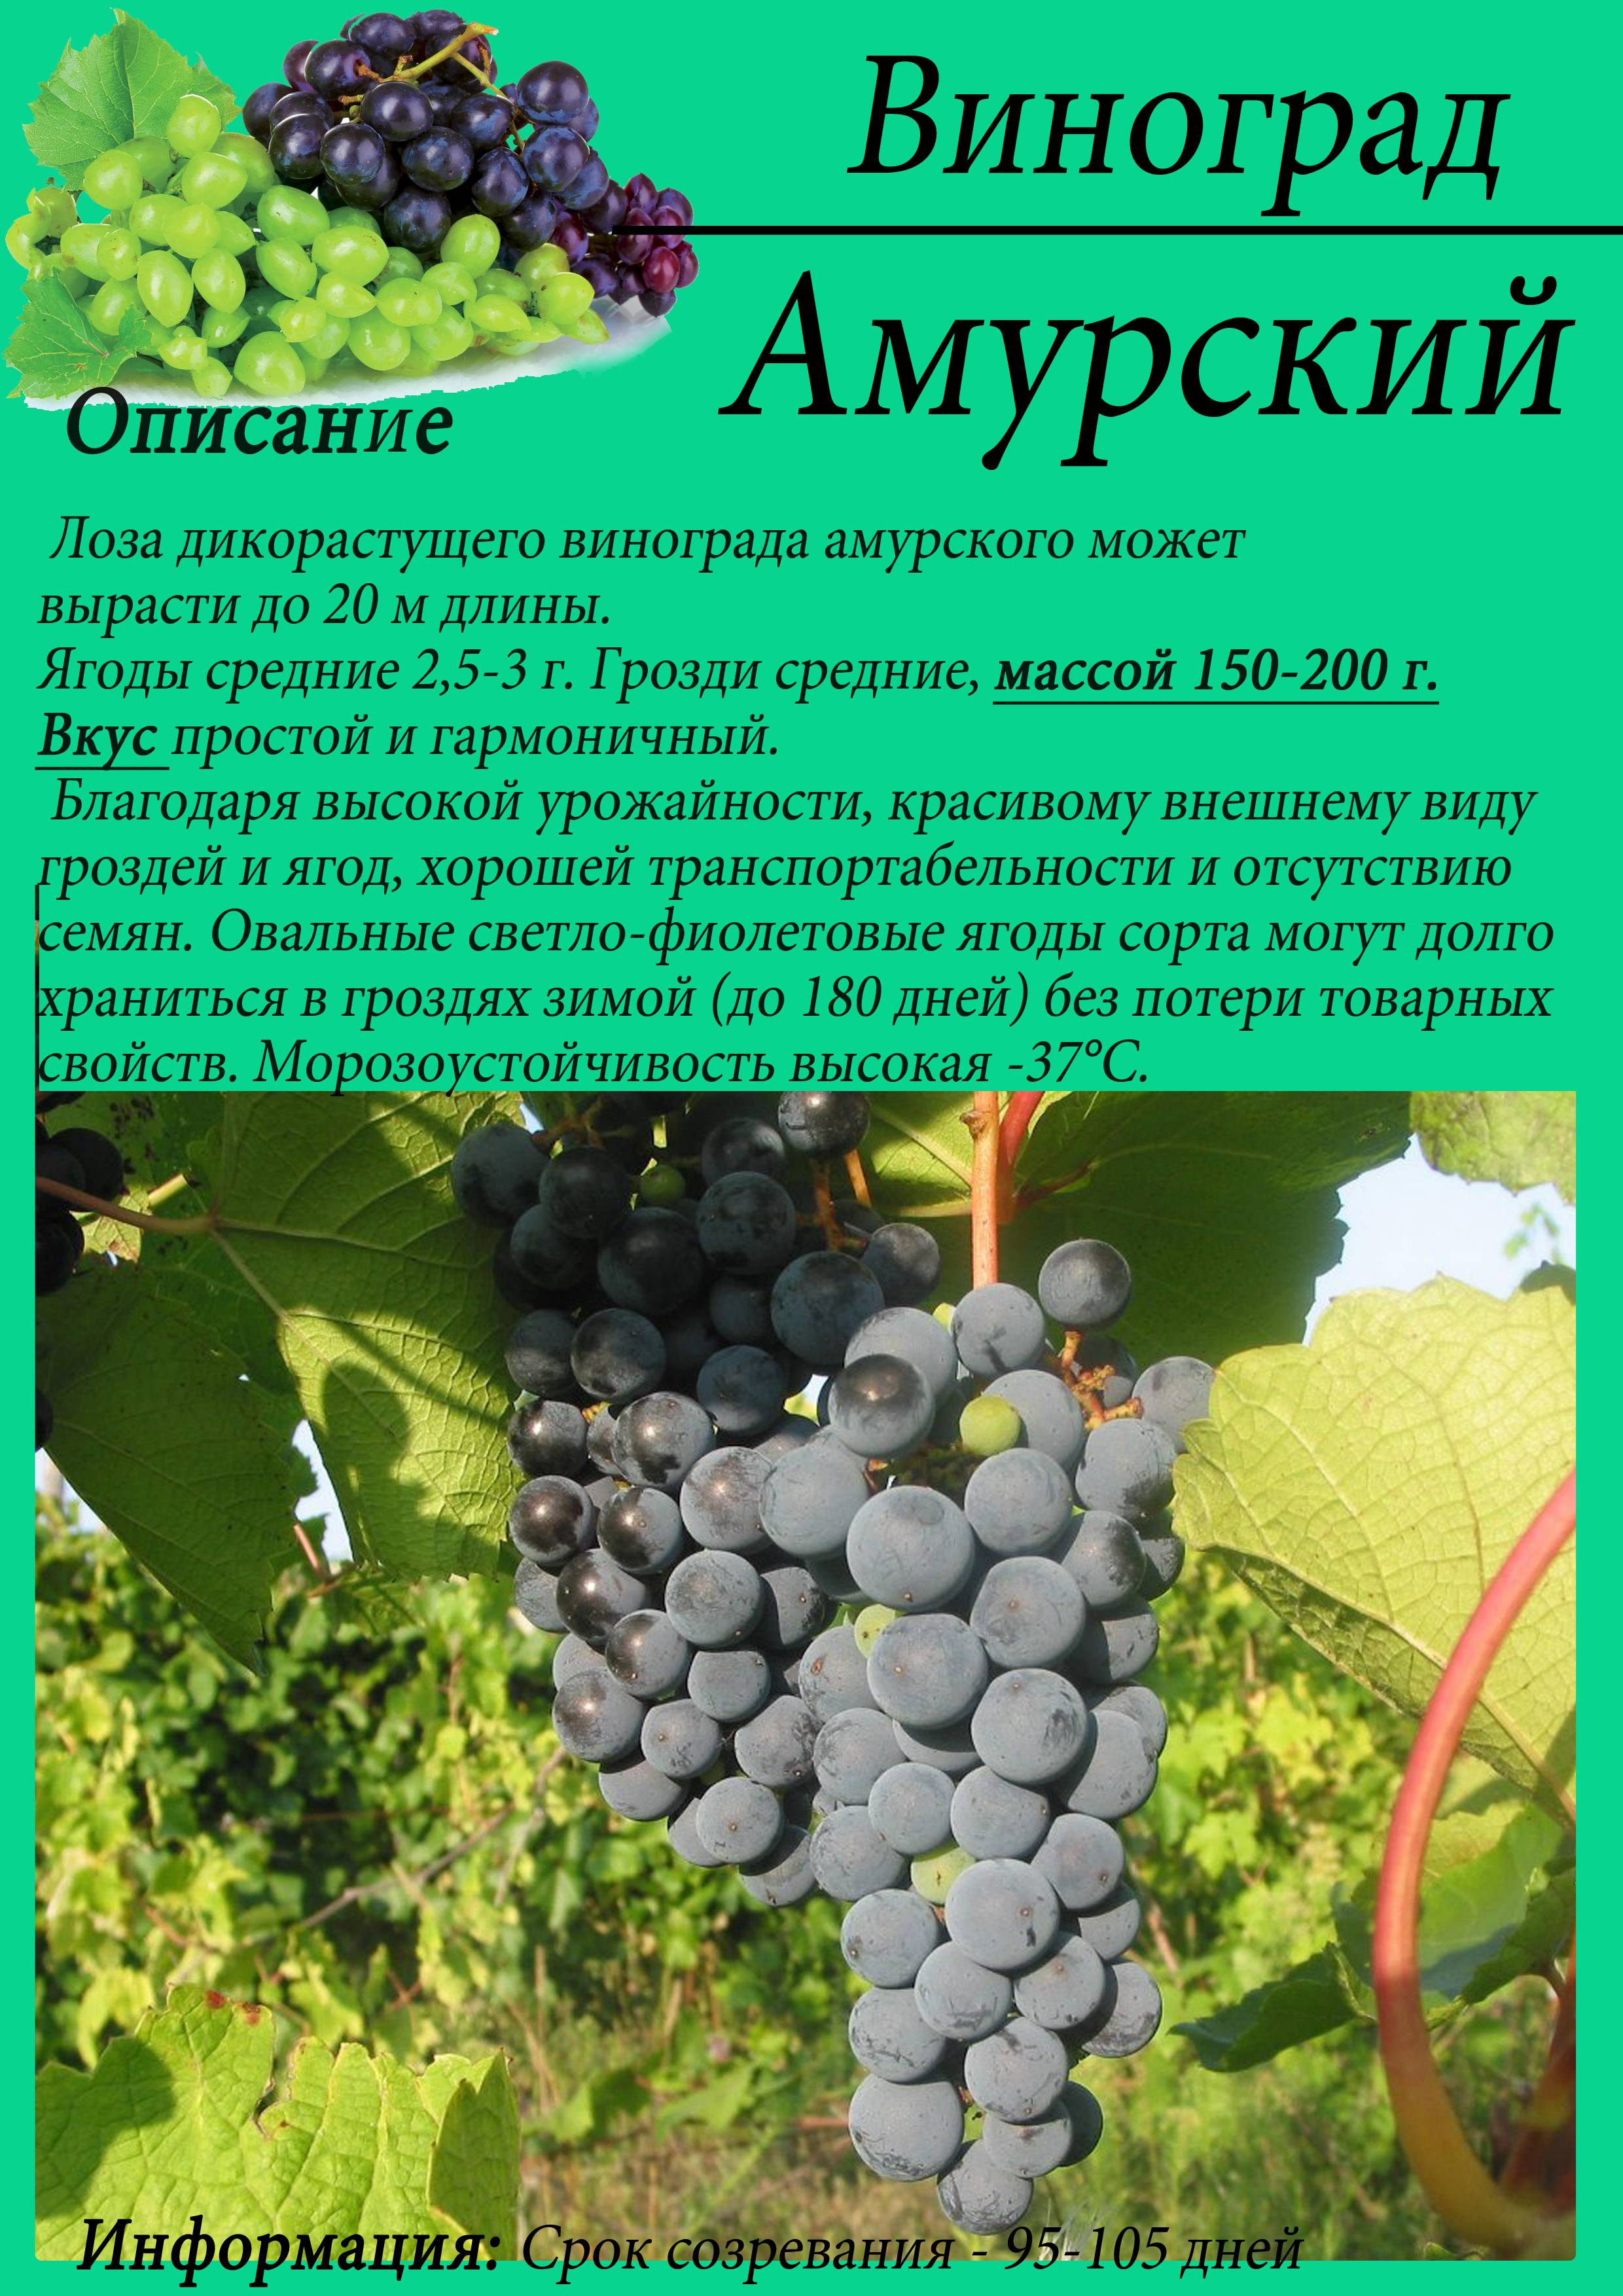 Описание и размножение сорта винограда Амурский, посадка и уход